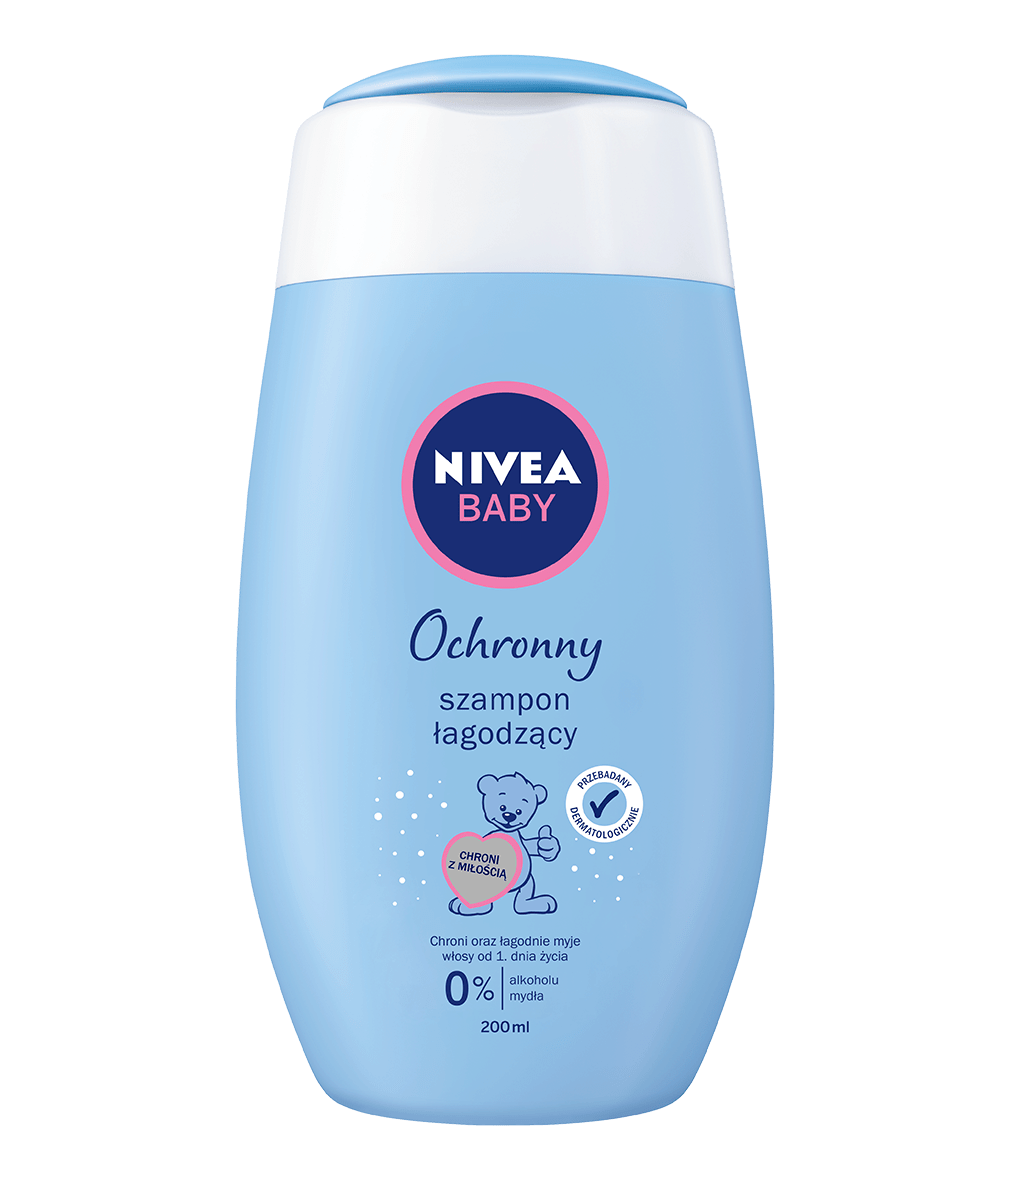 micelarny szampon do wlosow nivea baby